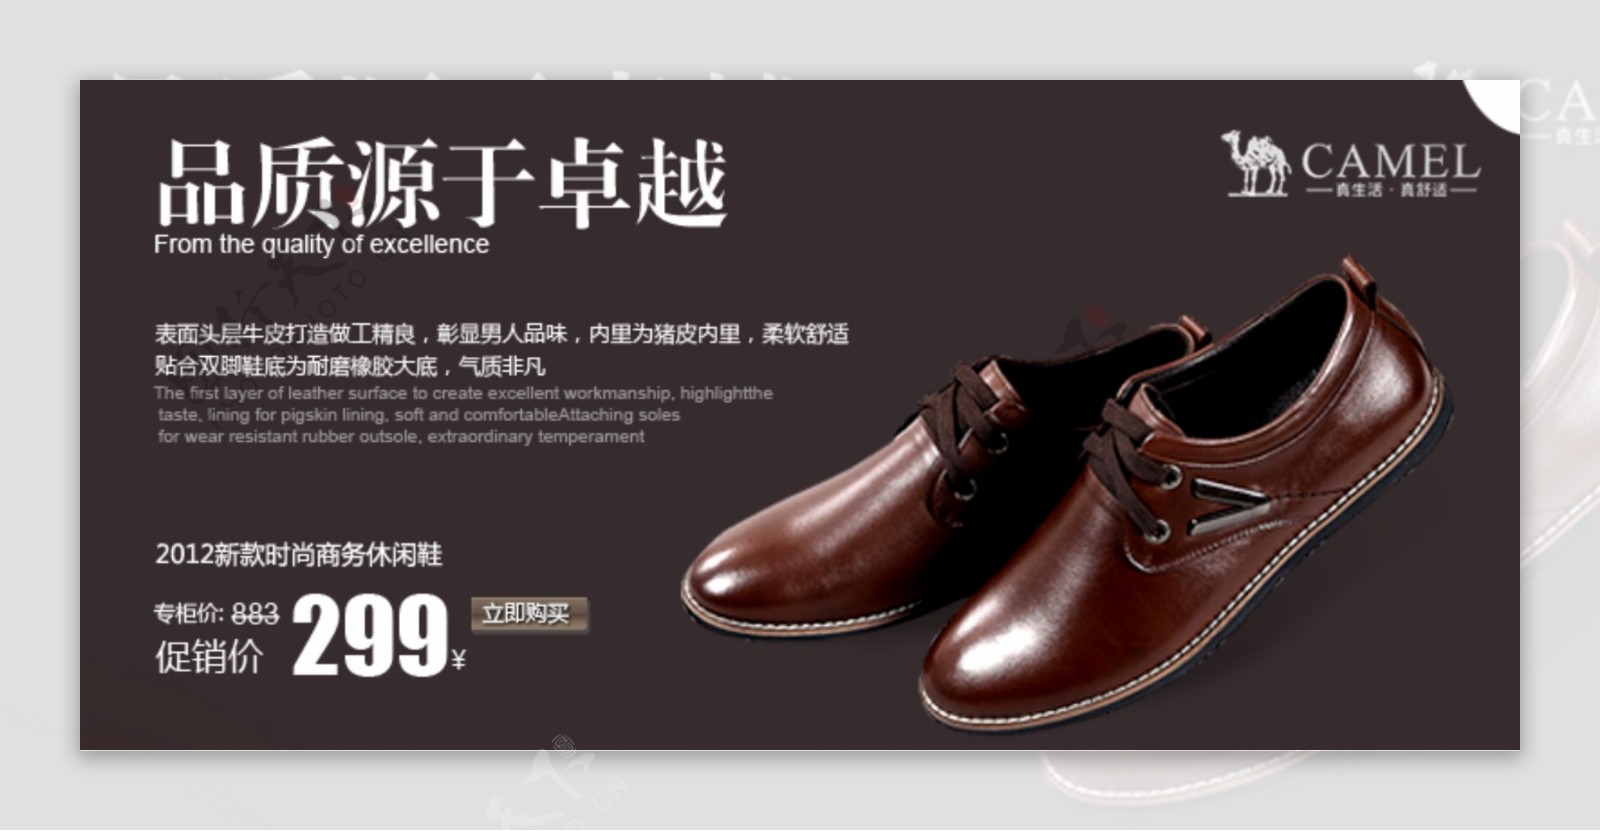 男鞋品质详情海报内页